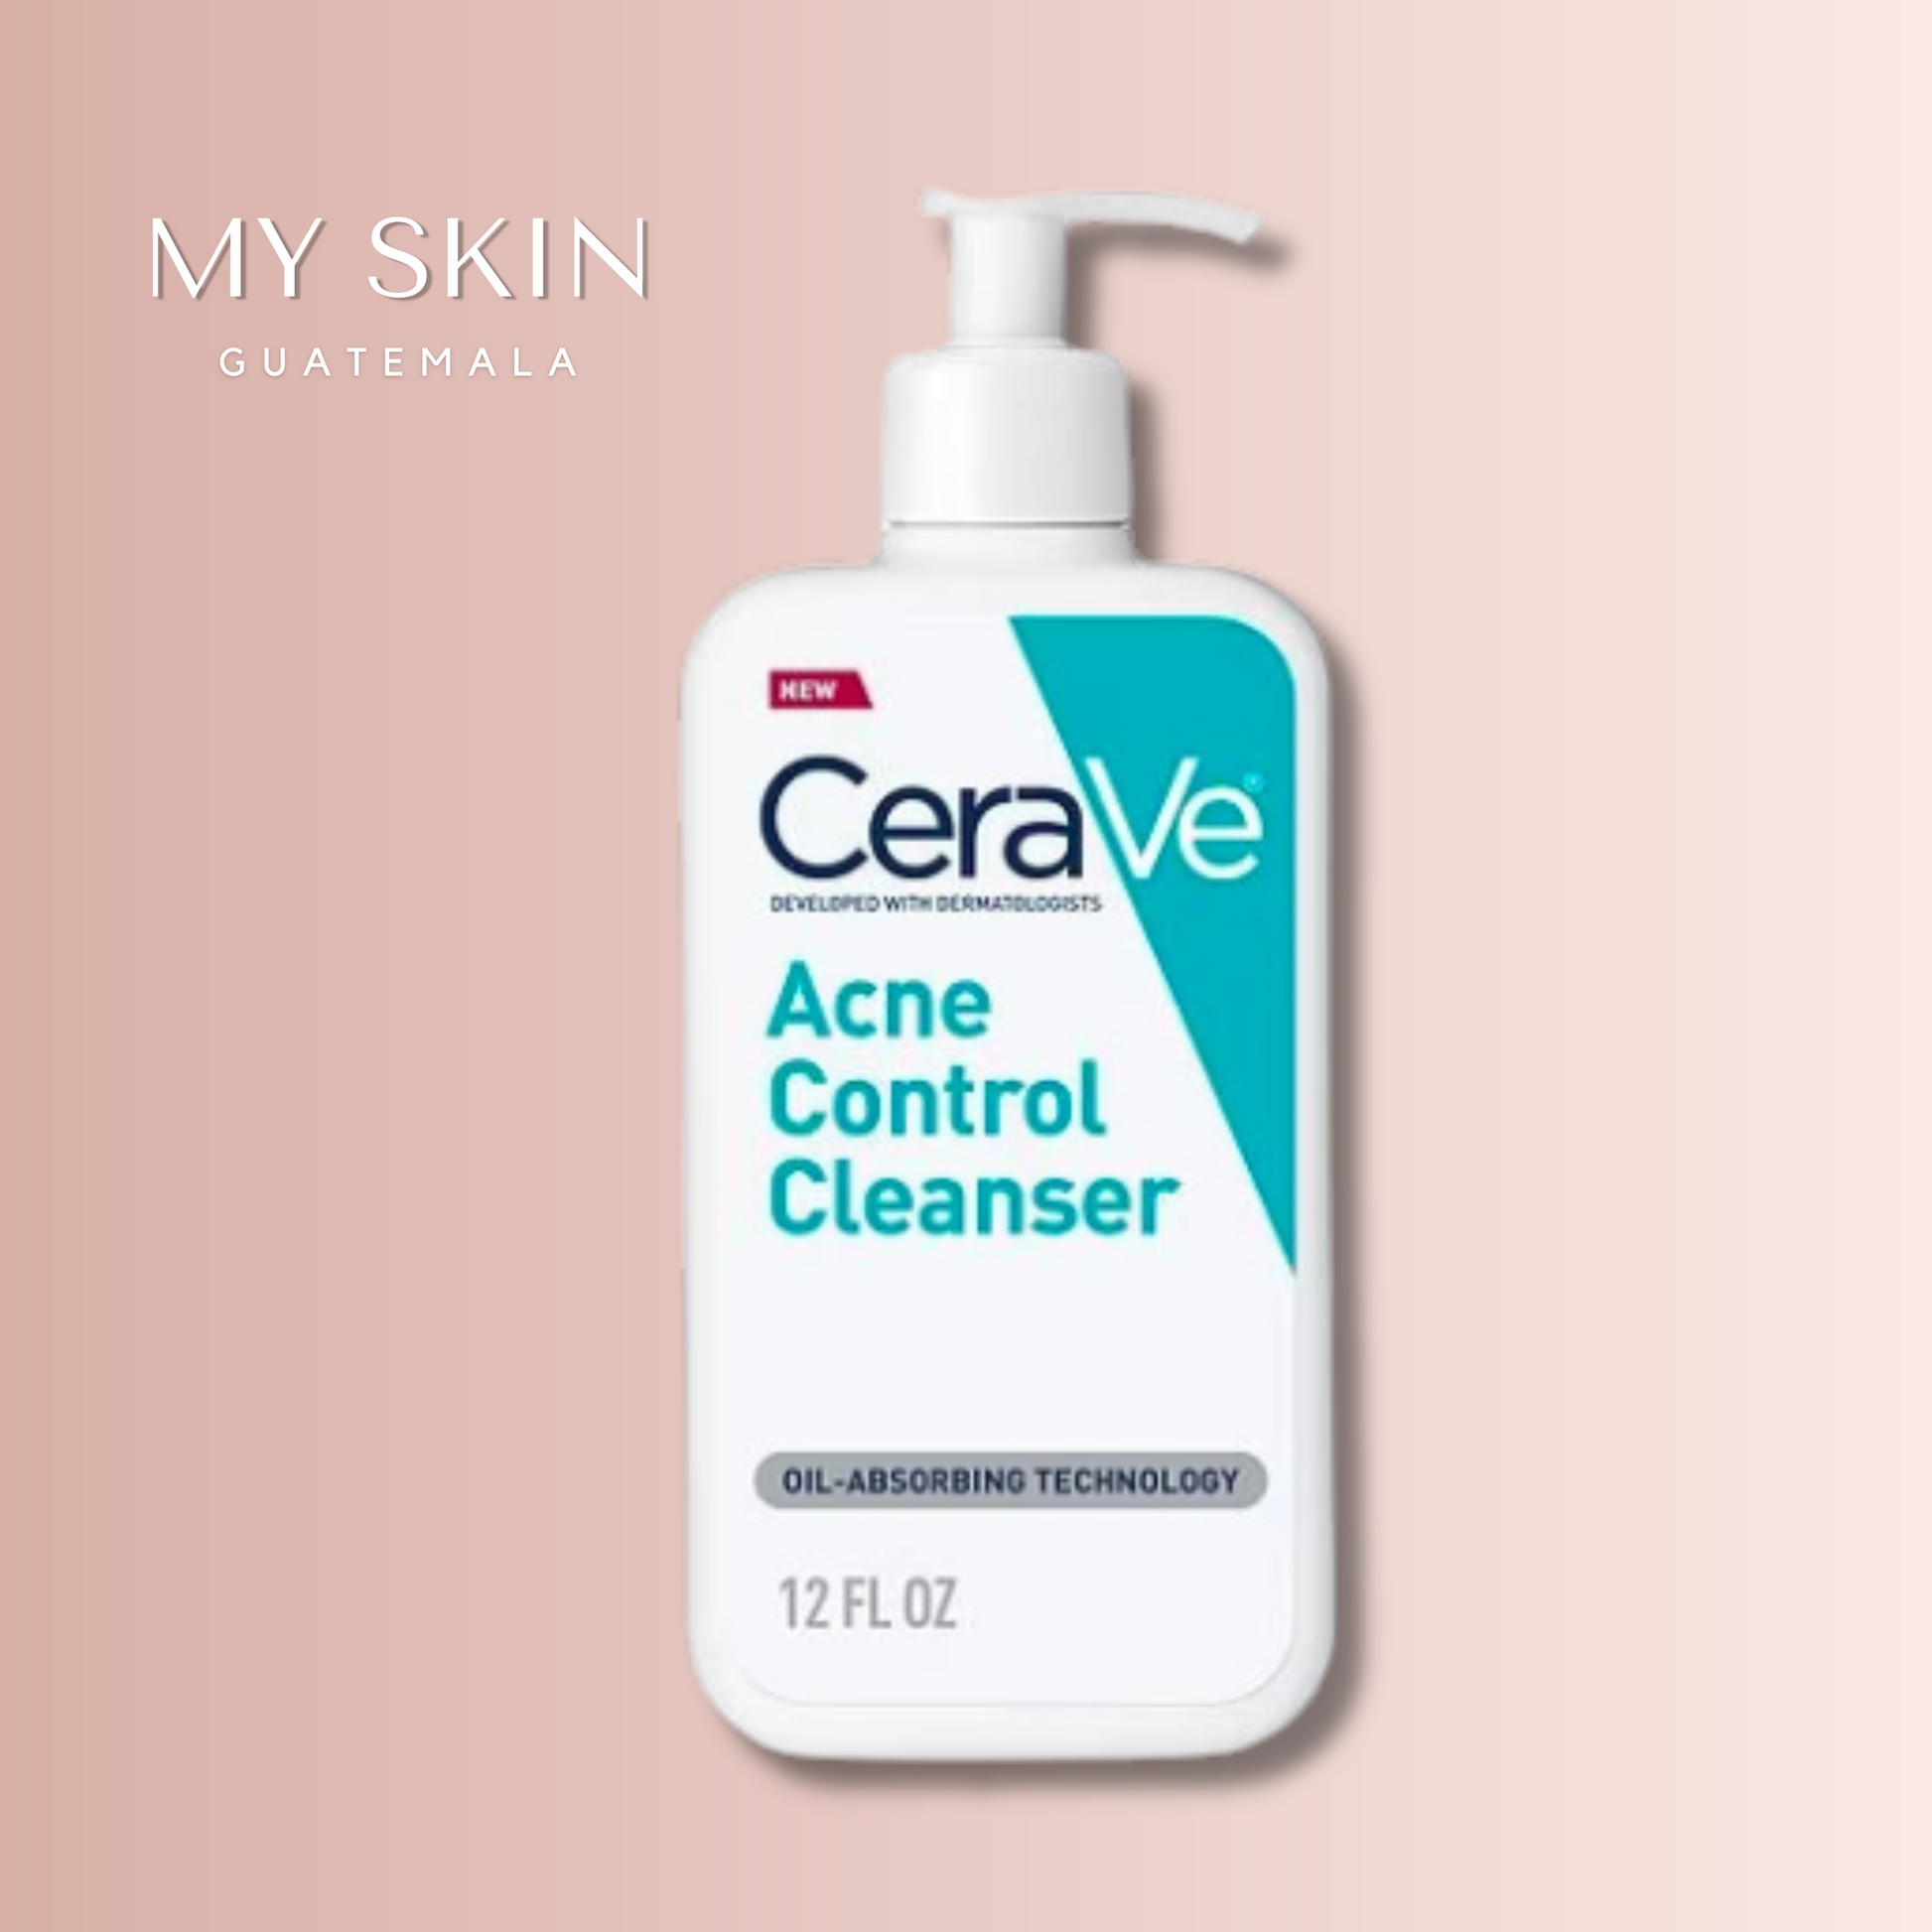 Acne Foaming Cream Cleanser - CeraVe / Limpiador contra el acné